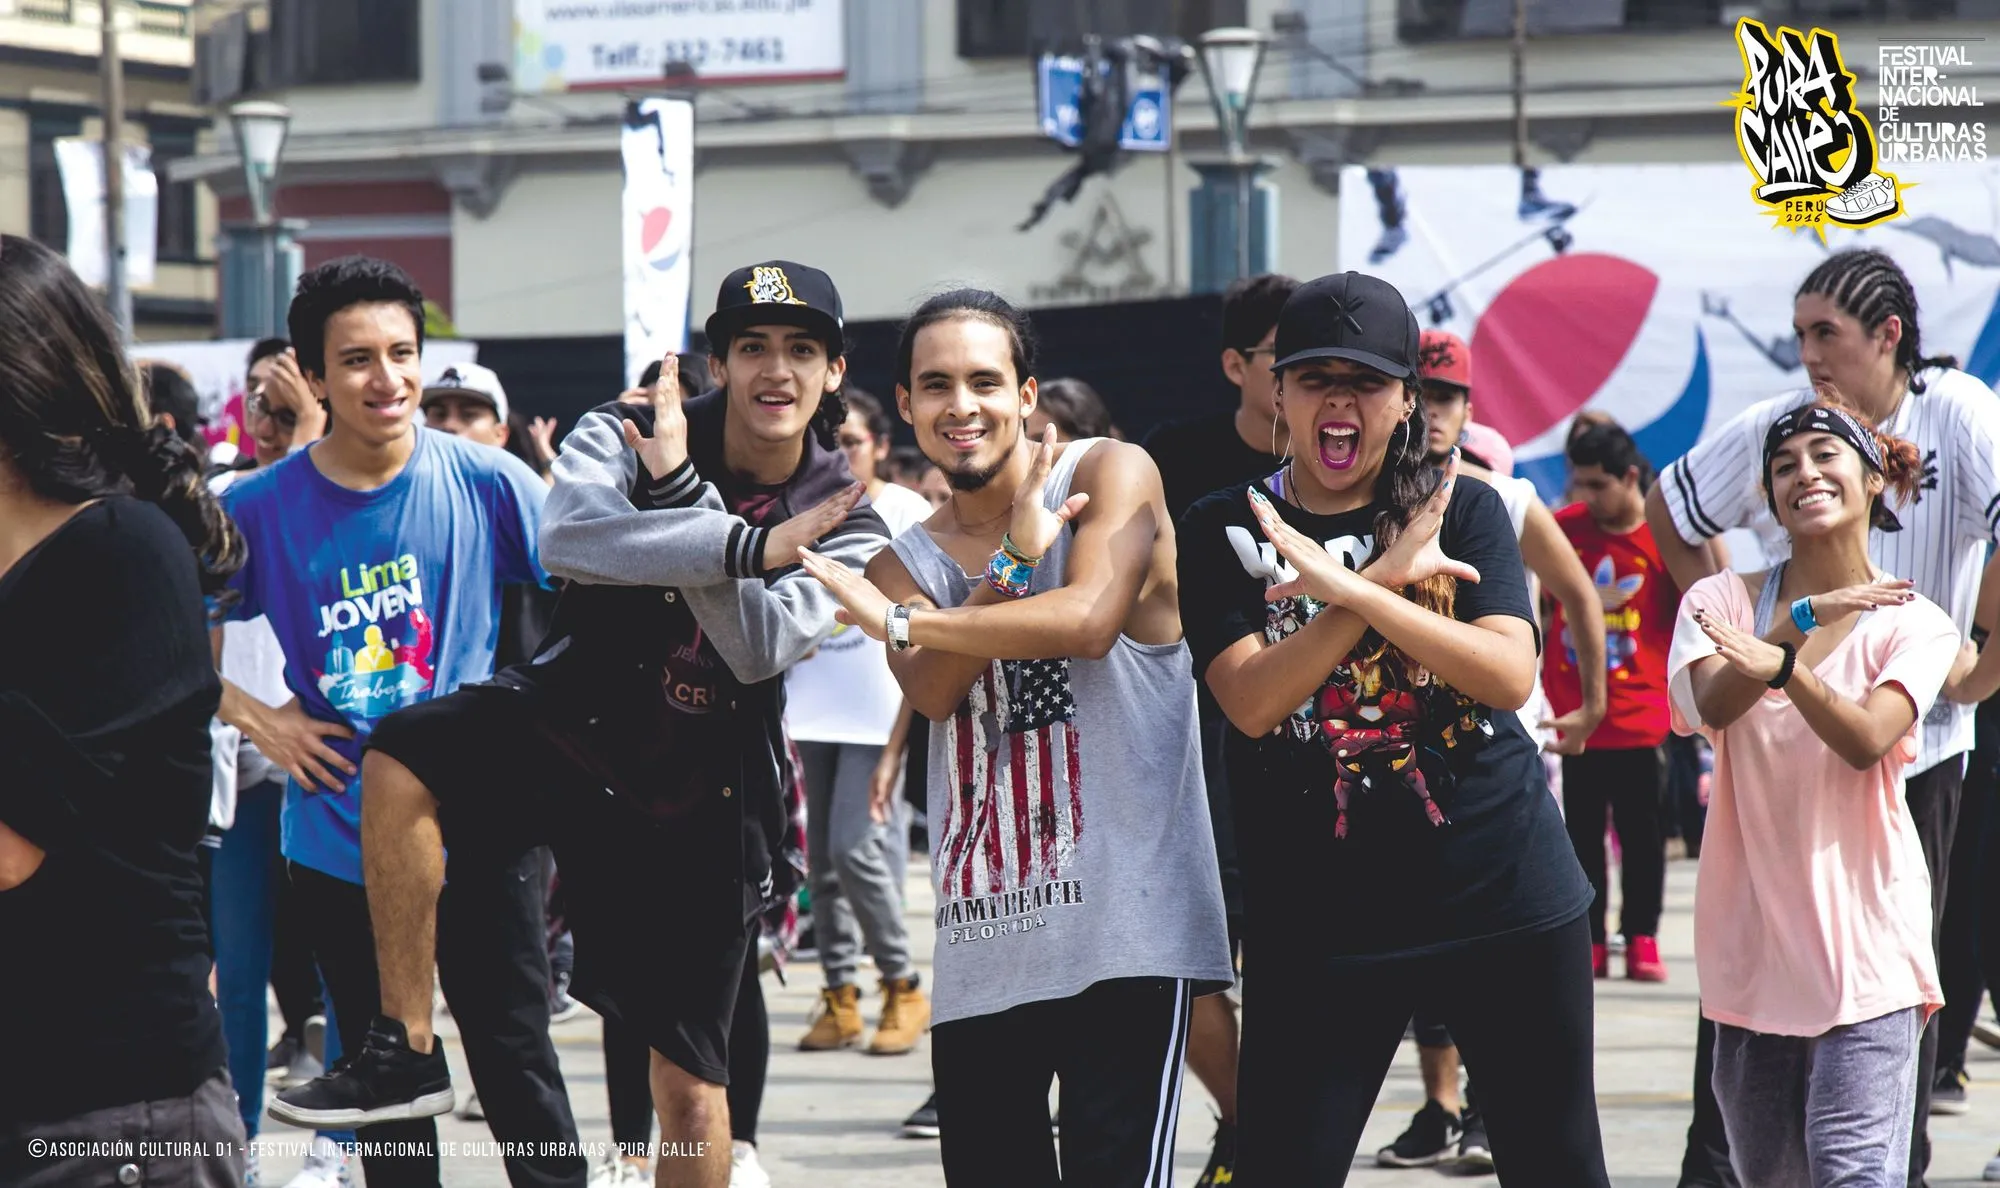 Festival internacional de culturas urbanas Pura Calle, contra la violencia juvenil en Perú.